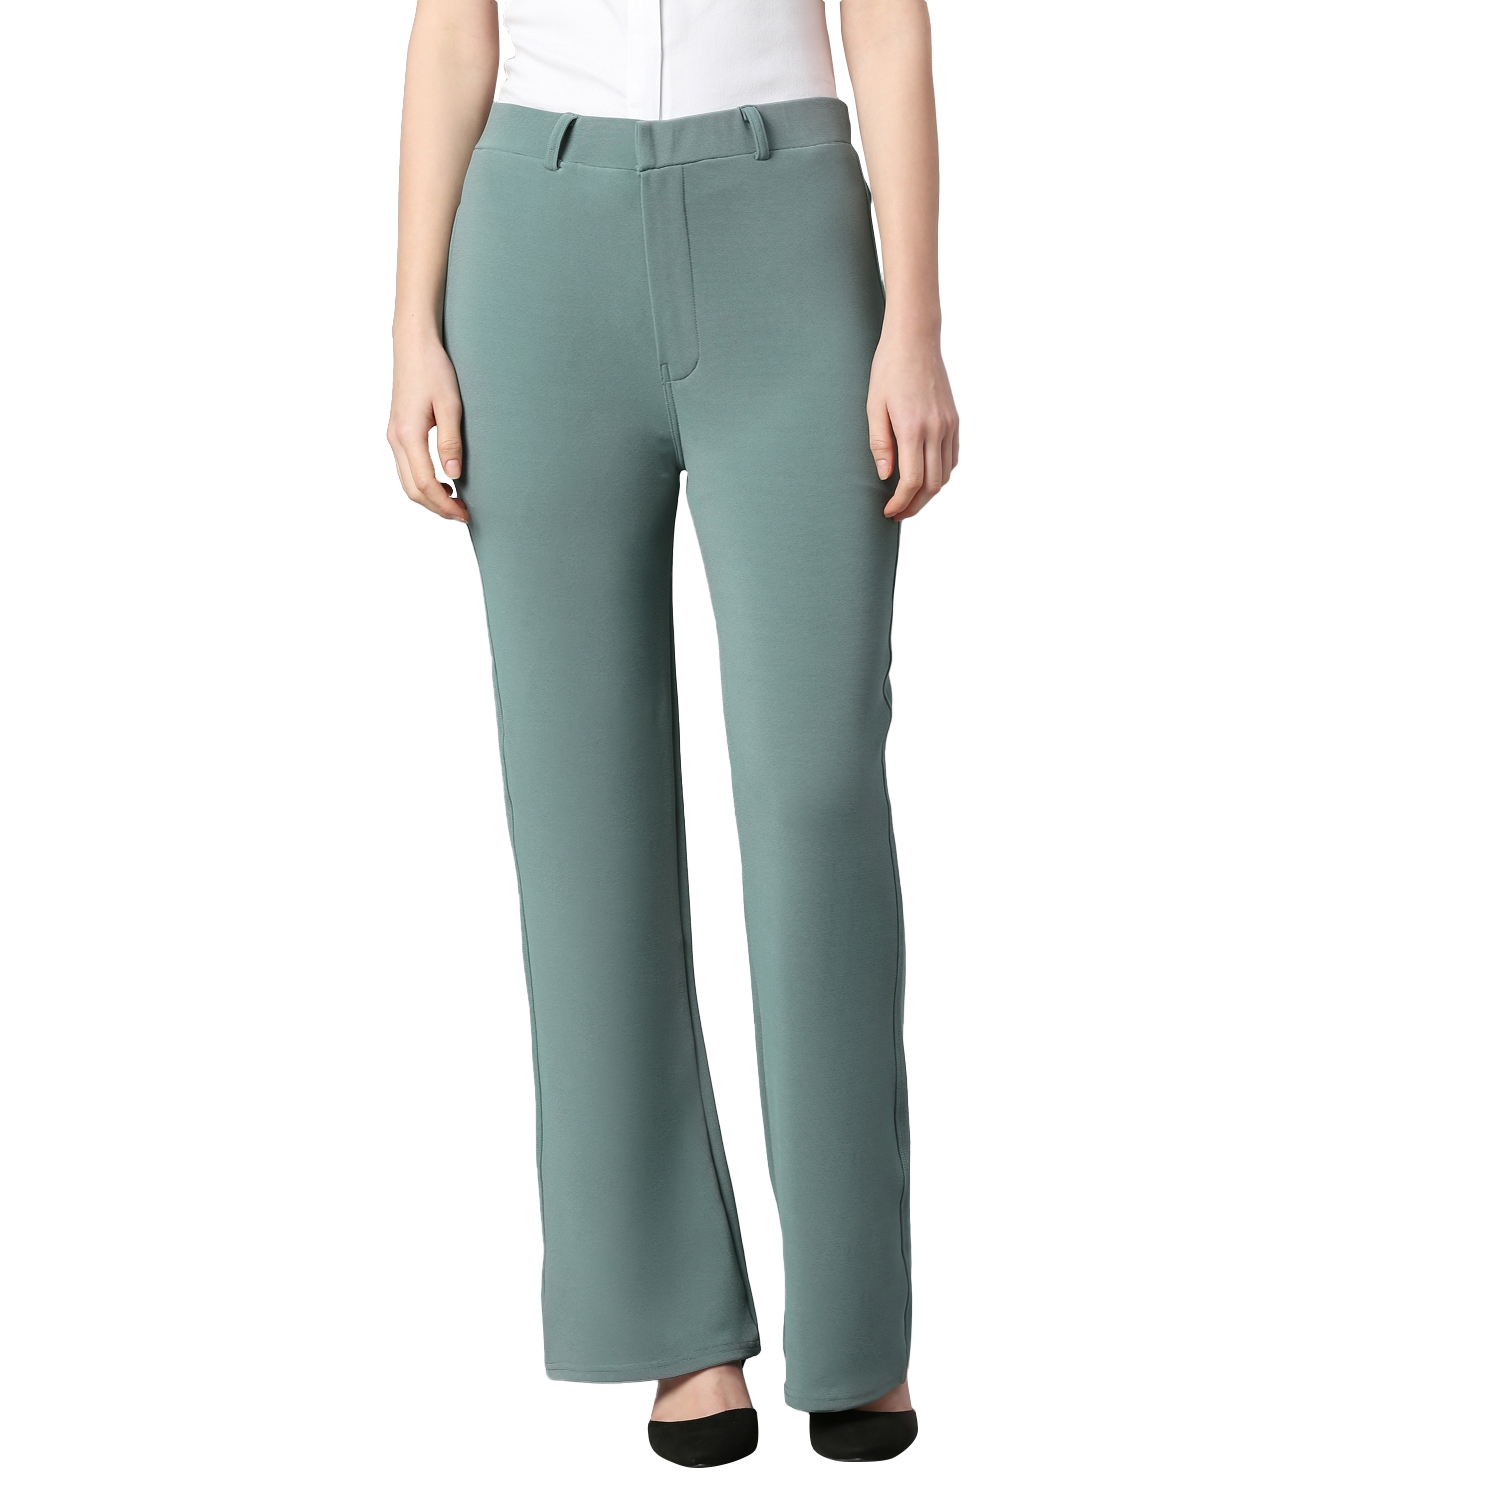 https://cdn.fynd.com/v2/falling-surf-7c8bb8/fyprod/wrkr/products/pictures/item/free/original/Y0TK4fawi-Smarty-Pants-womens-cotton-lycra-bell-bottom-olive-color-formal-trouser.jpeg